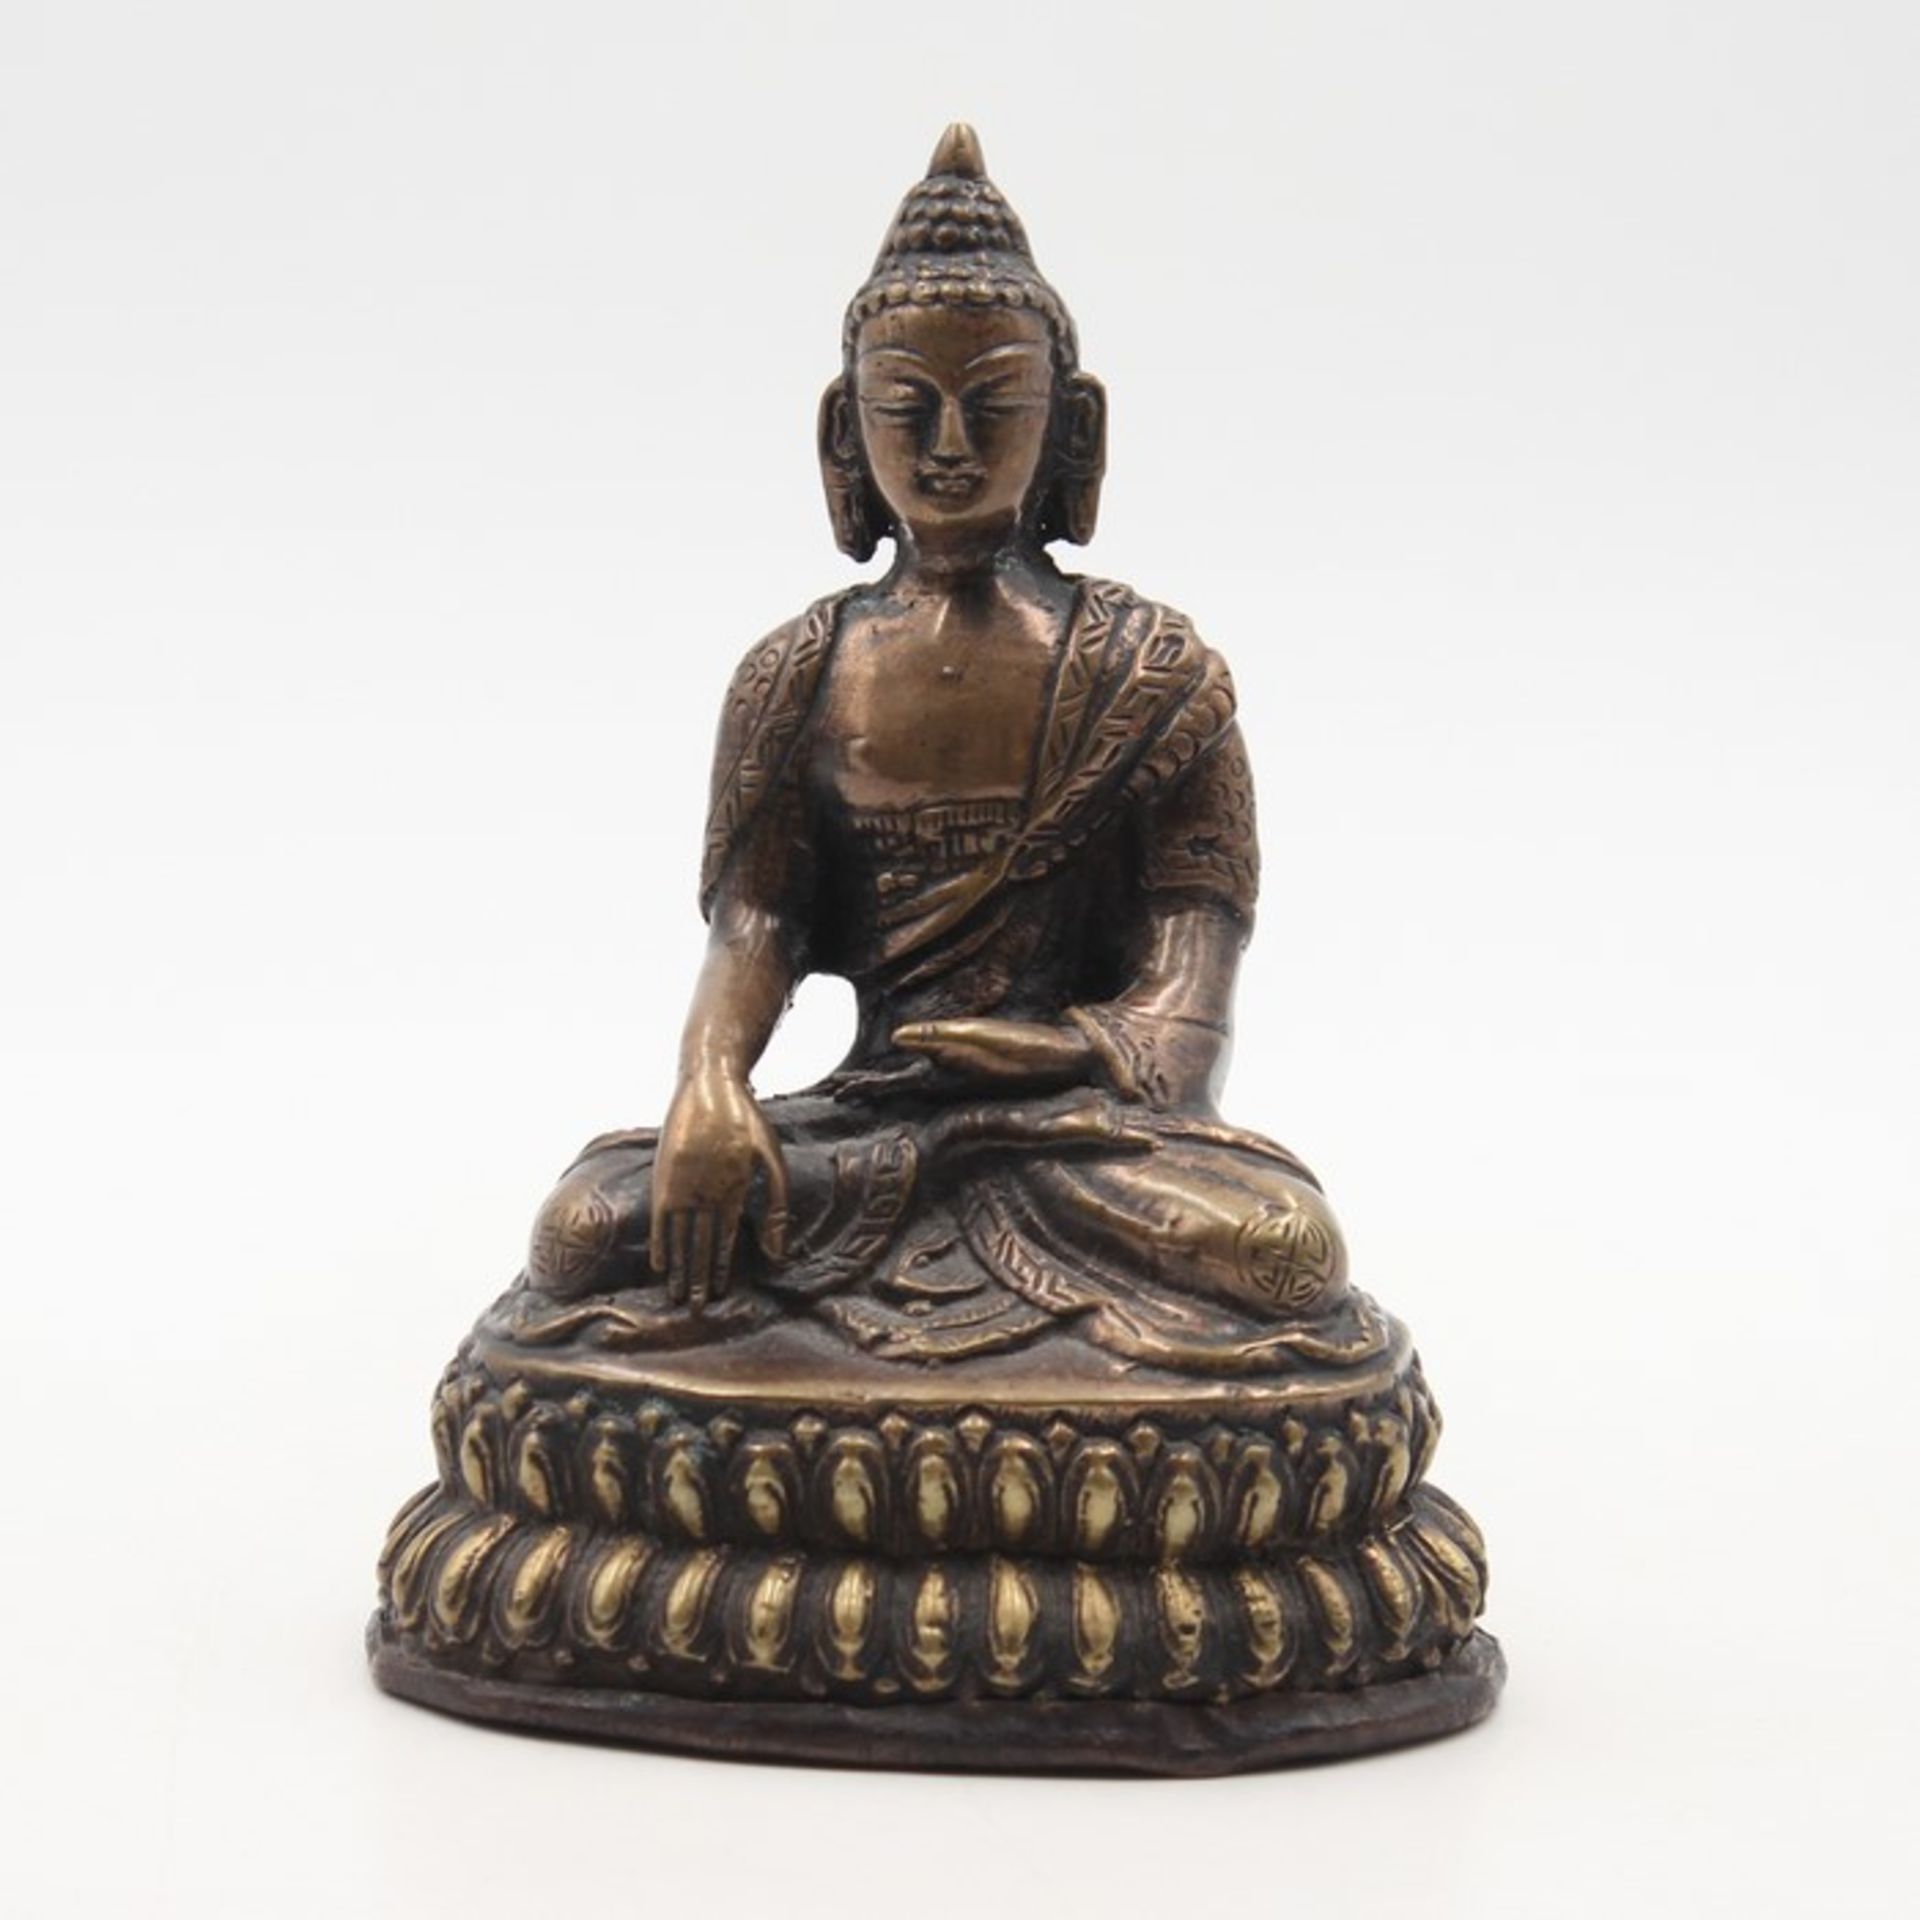 Figur20.Jh., Bronze, patiniert, vollplastische Figur eines auf Lothusthron sitzenden Buddhas, in